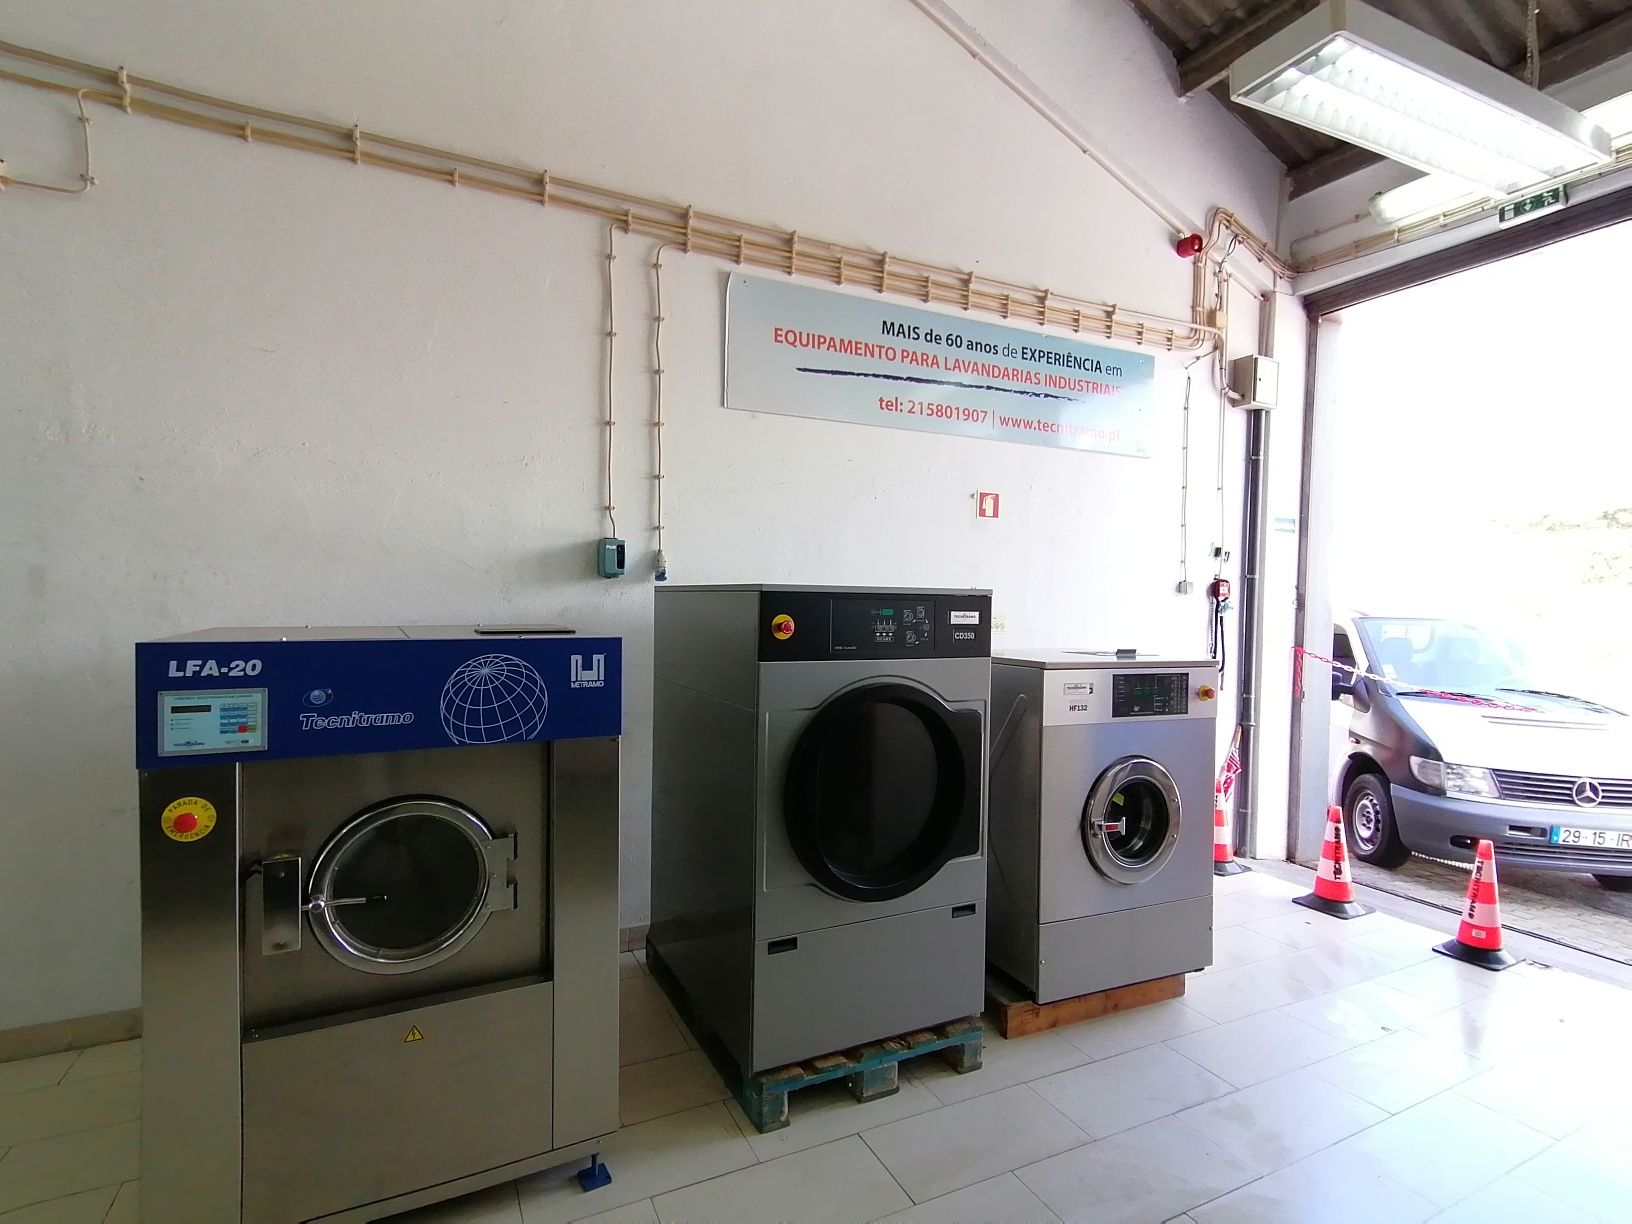 Aluguer de equipamentos Self-service ou para lavandaria industriail